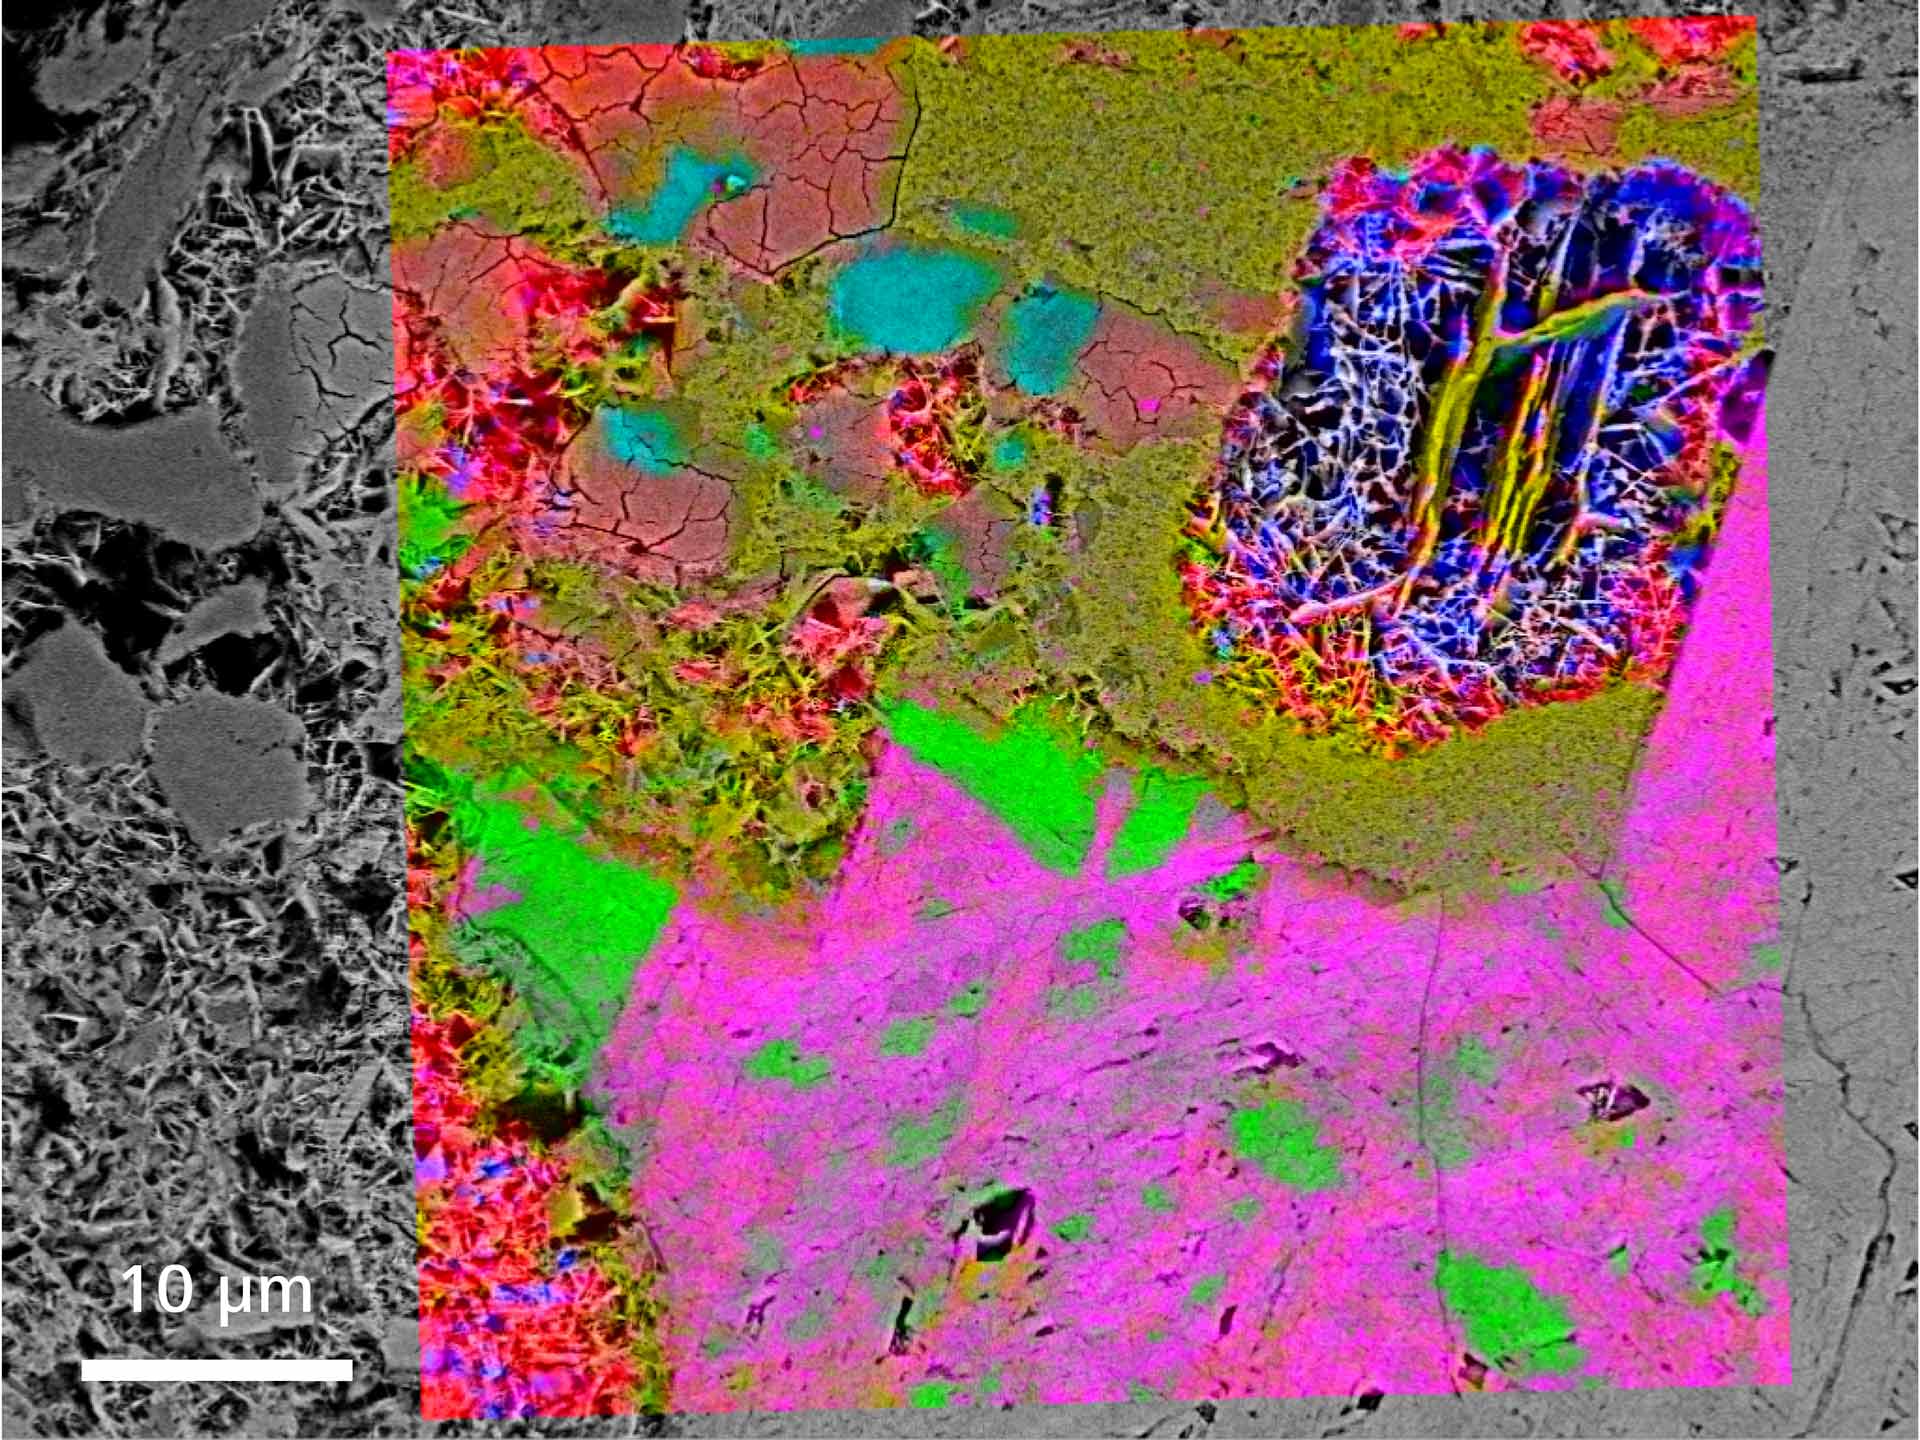 Mineralogía de hierro: Identificación de Raman de minerales de hierro, imagen SEM y mapas de Raman superpuestos. (La hematita es roja, azul, verde, naranja y rosa; la goetita es de color azul claro).